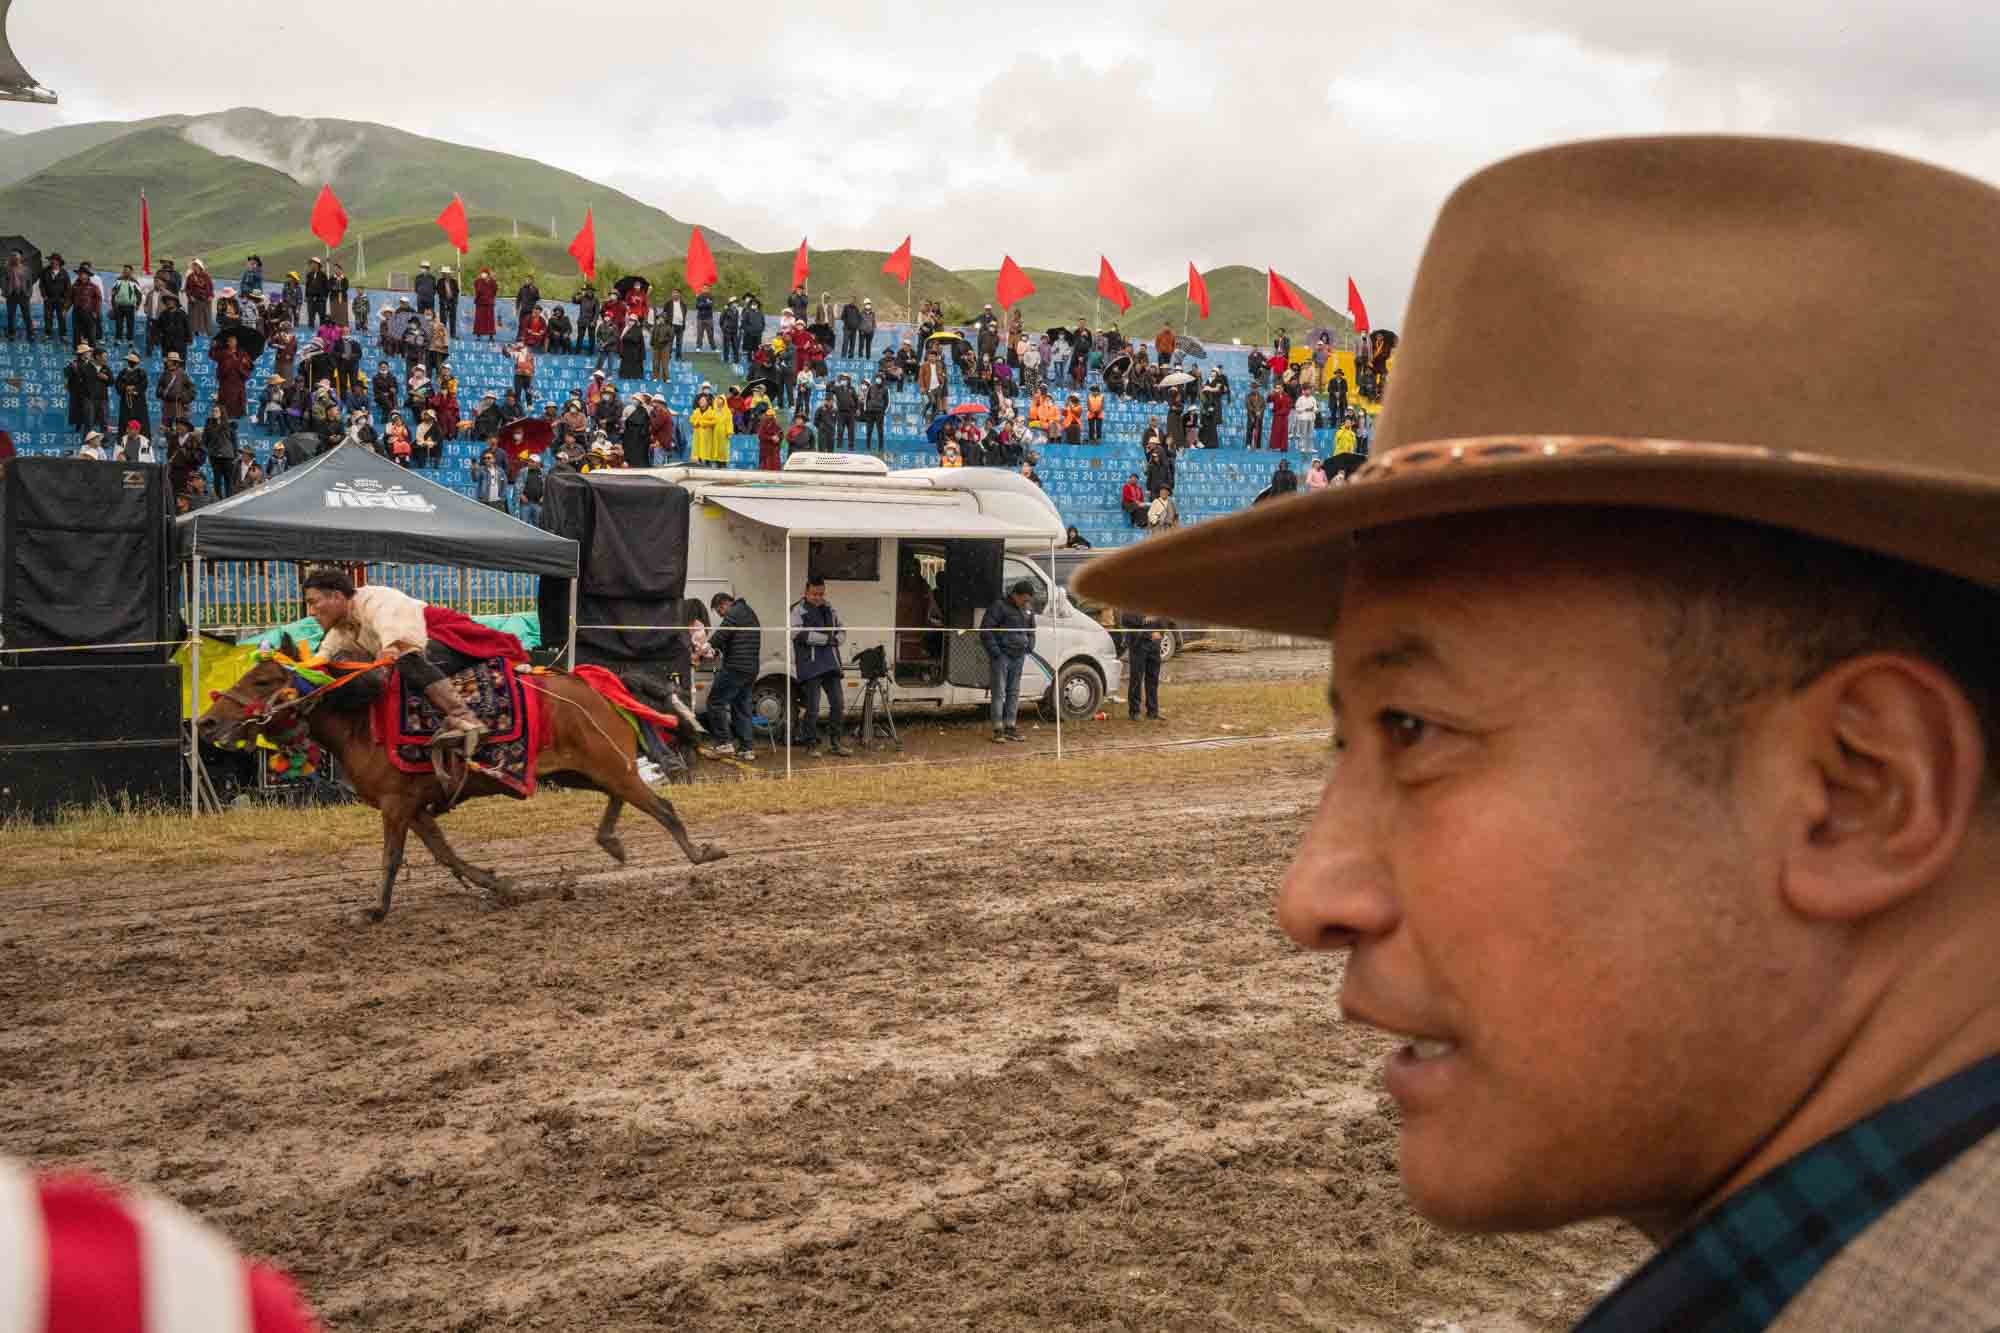  Tibetan horse race festival in Yushu, China 